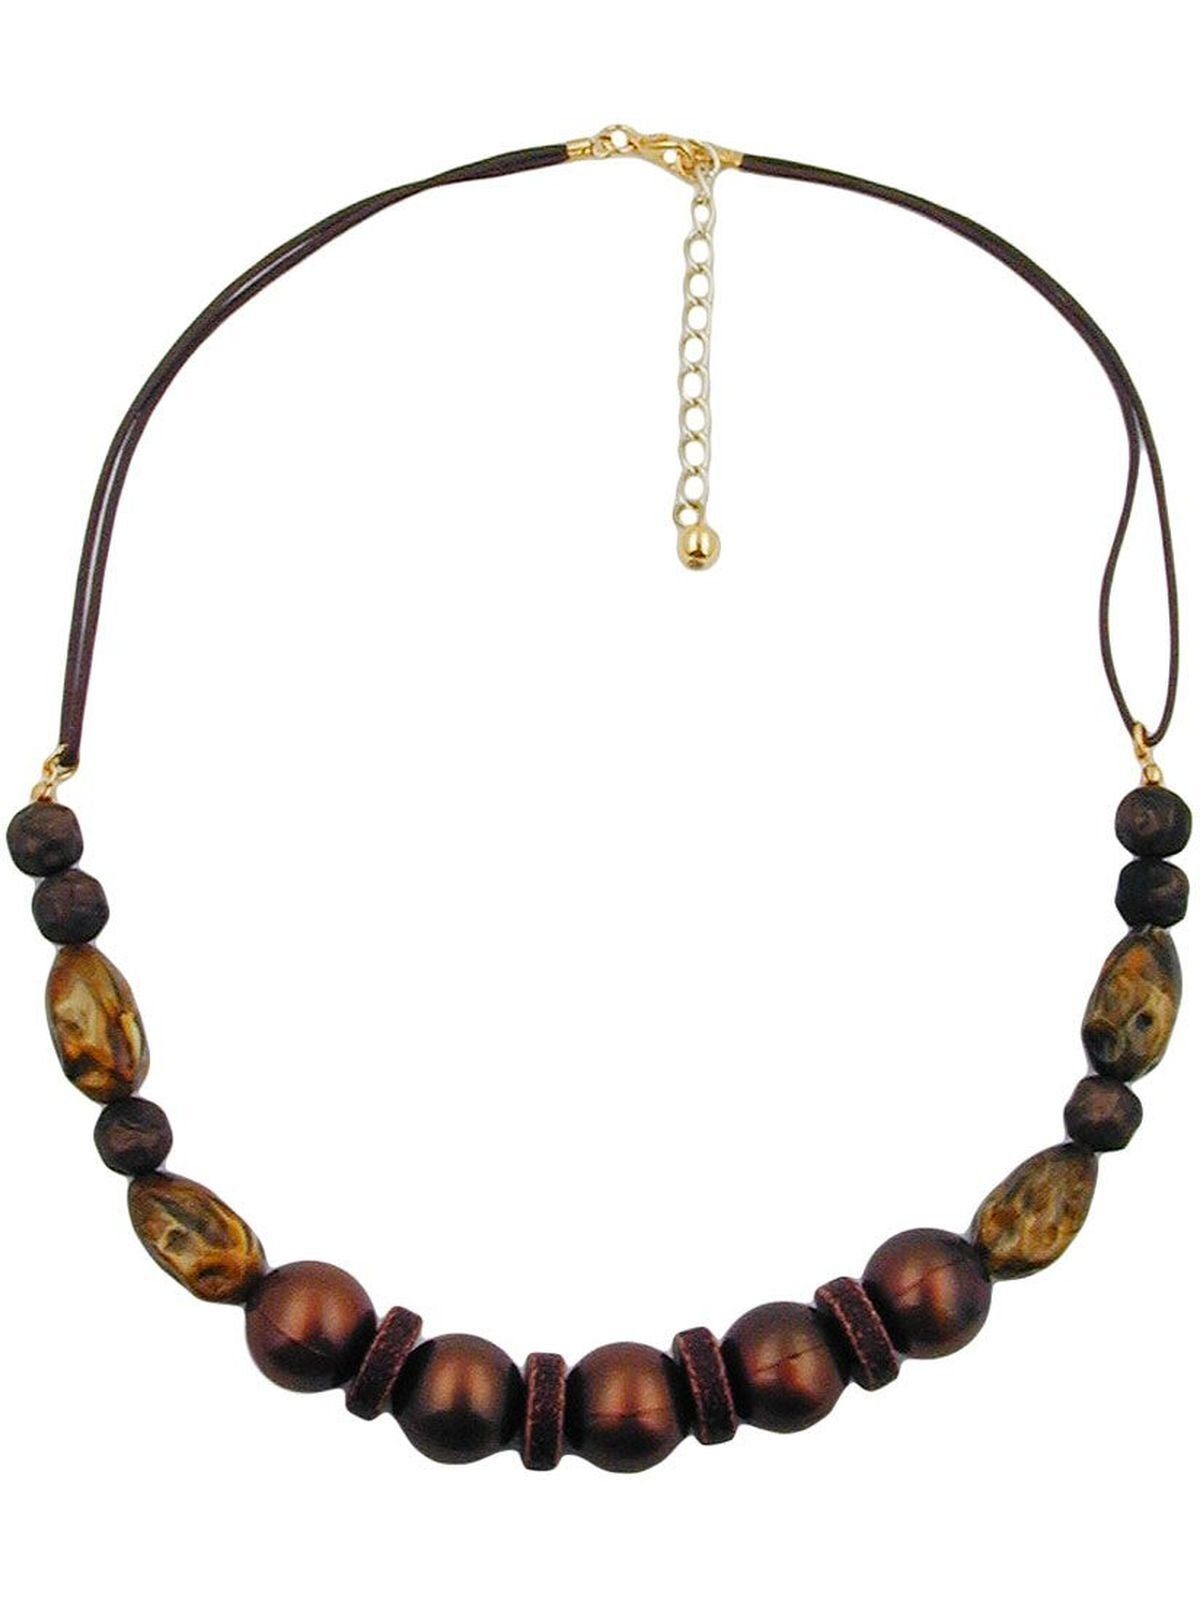 Gallay Perlenkette Kunststoffperlen perlmutt braun seidig glänzend mit Kordel braun 50cm (1-tlg) | Perlenketten